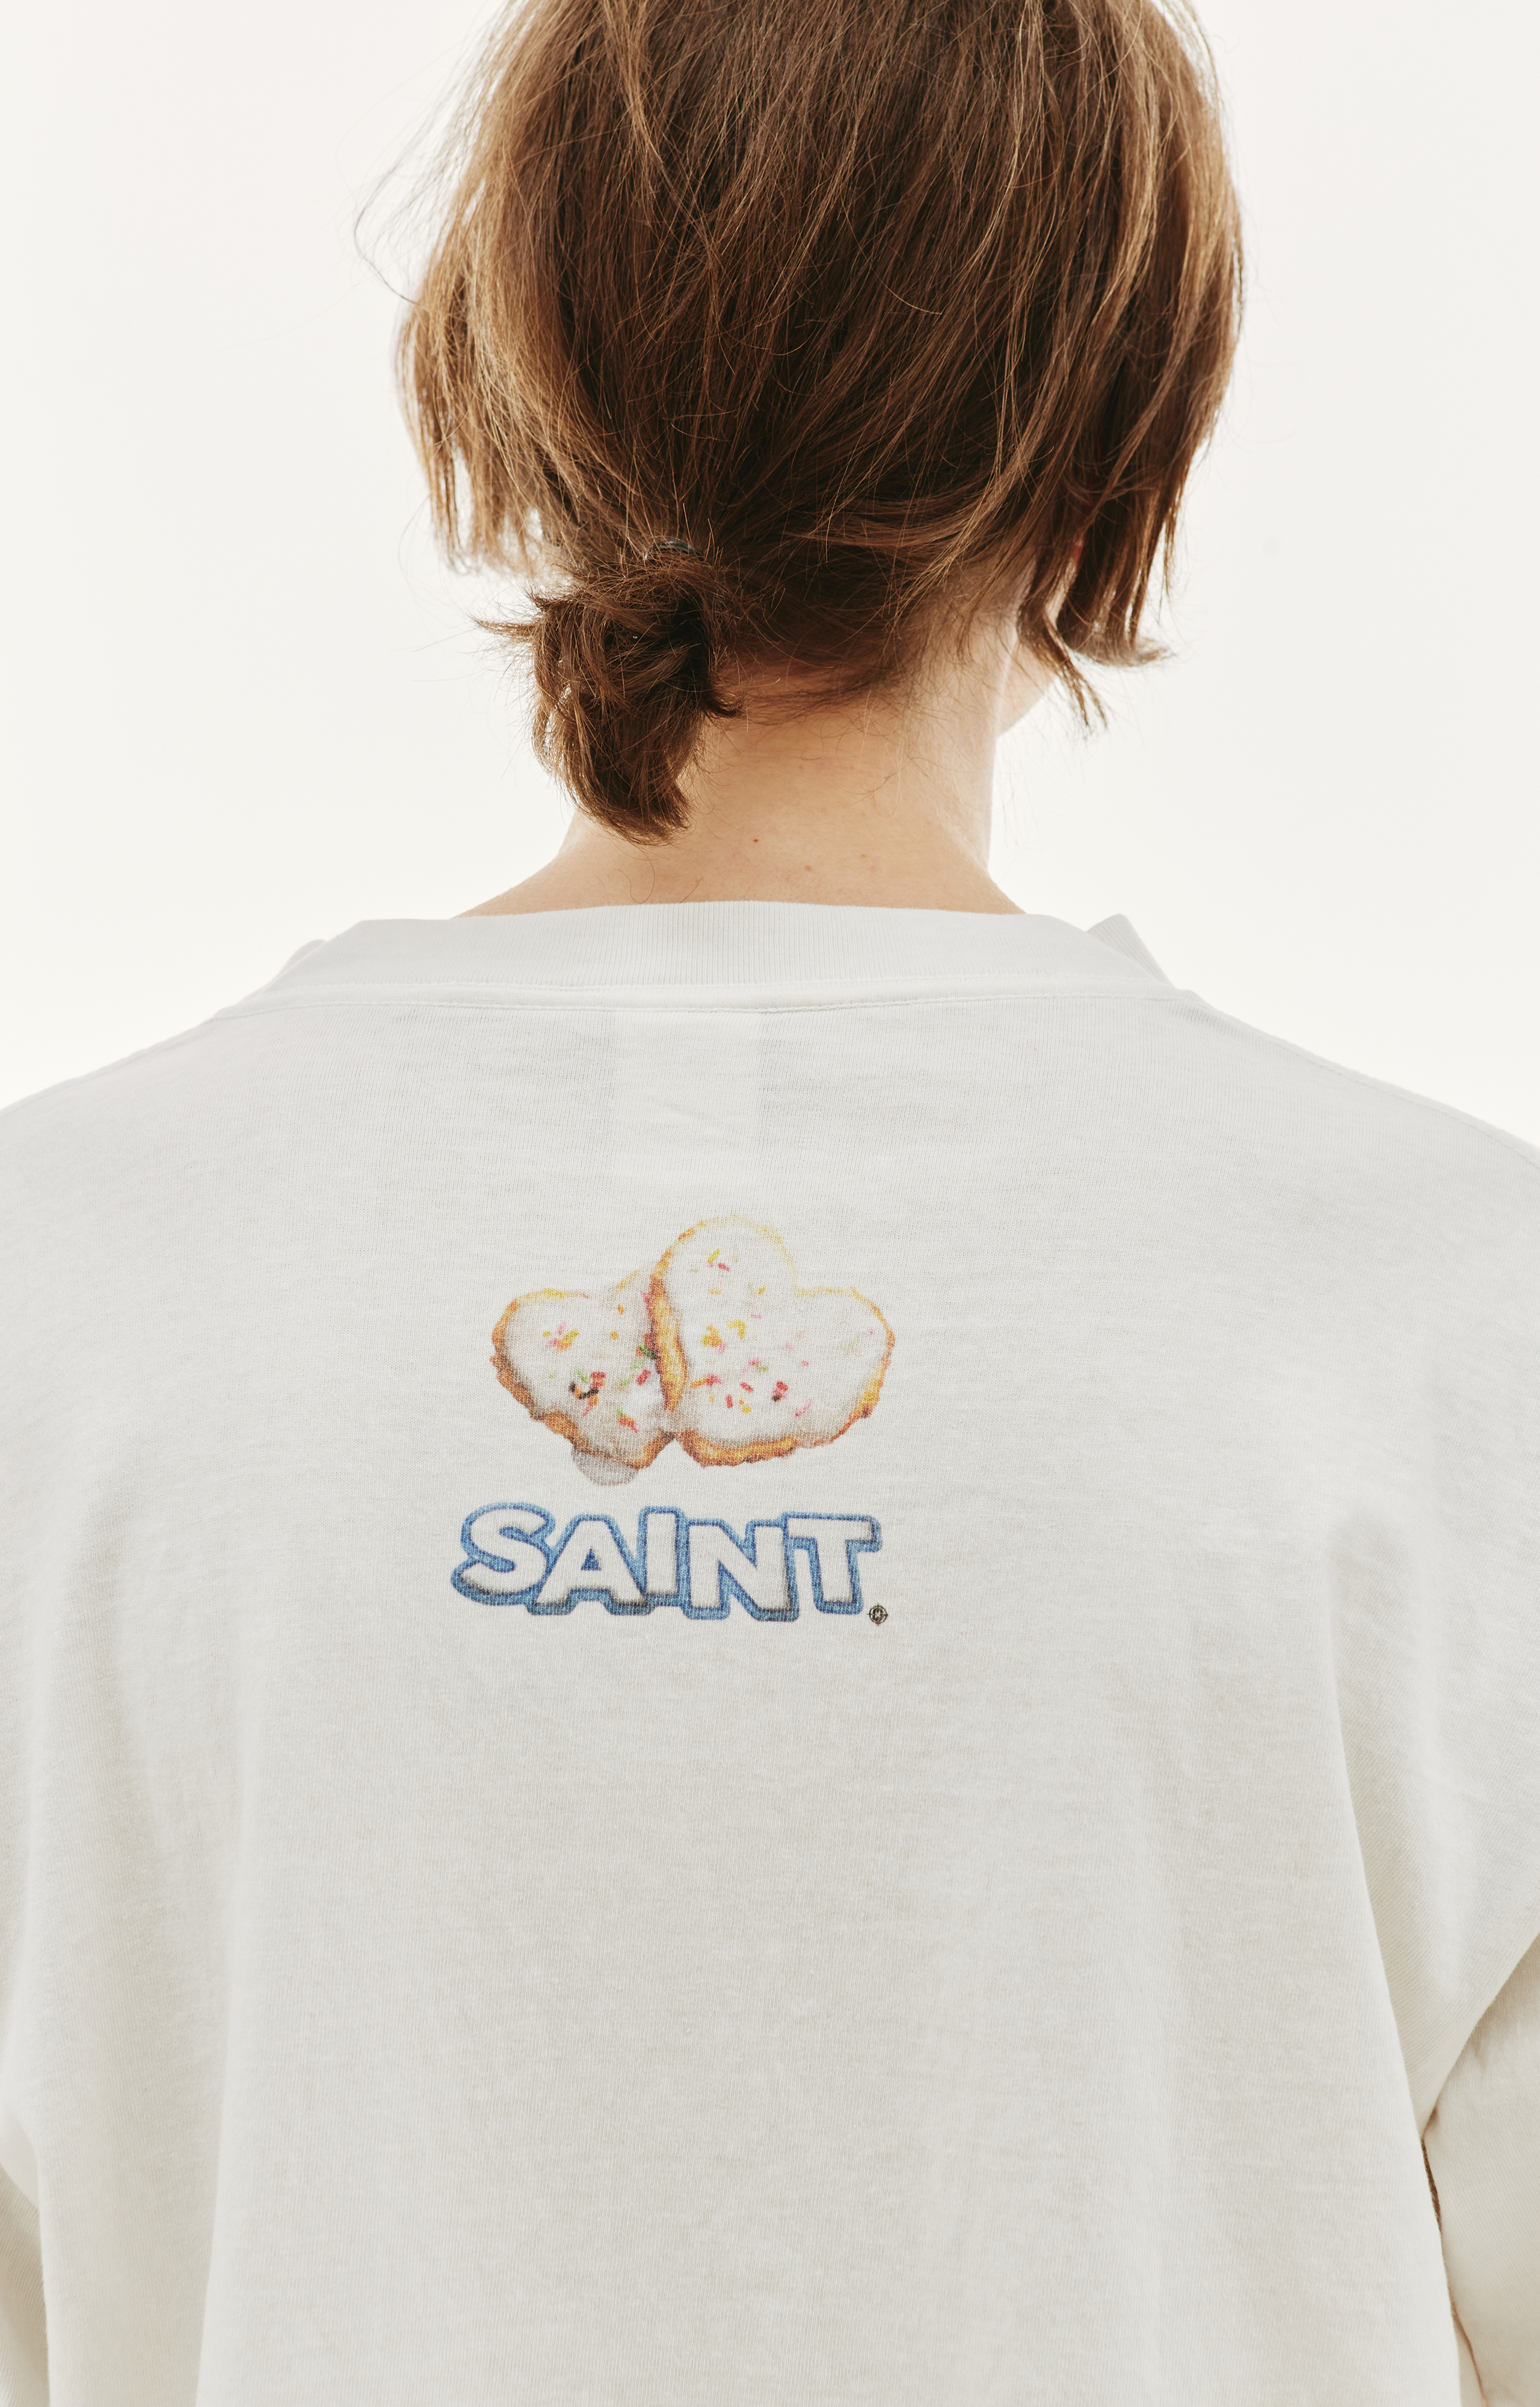 Buy Saint Michael men white oreo cotton t-shirt for $364 online on